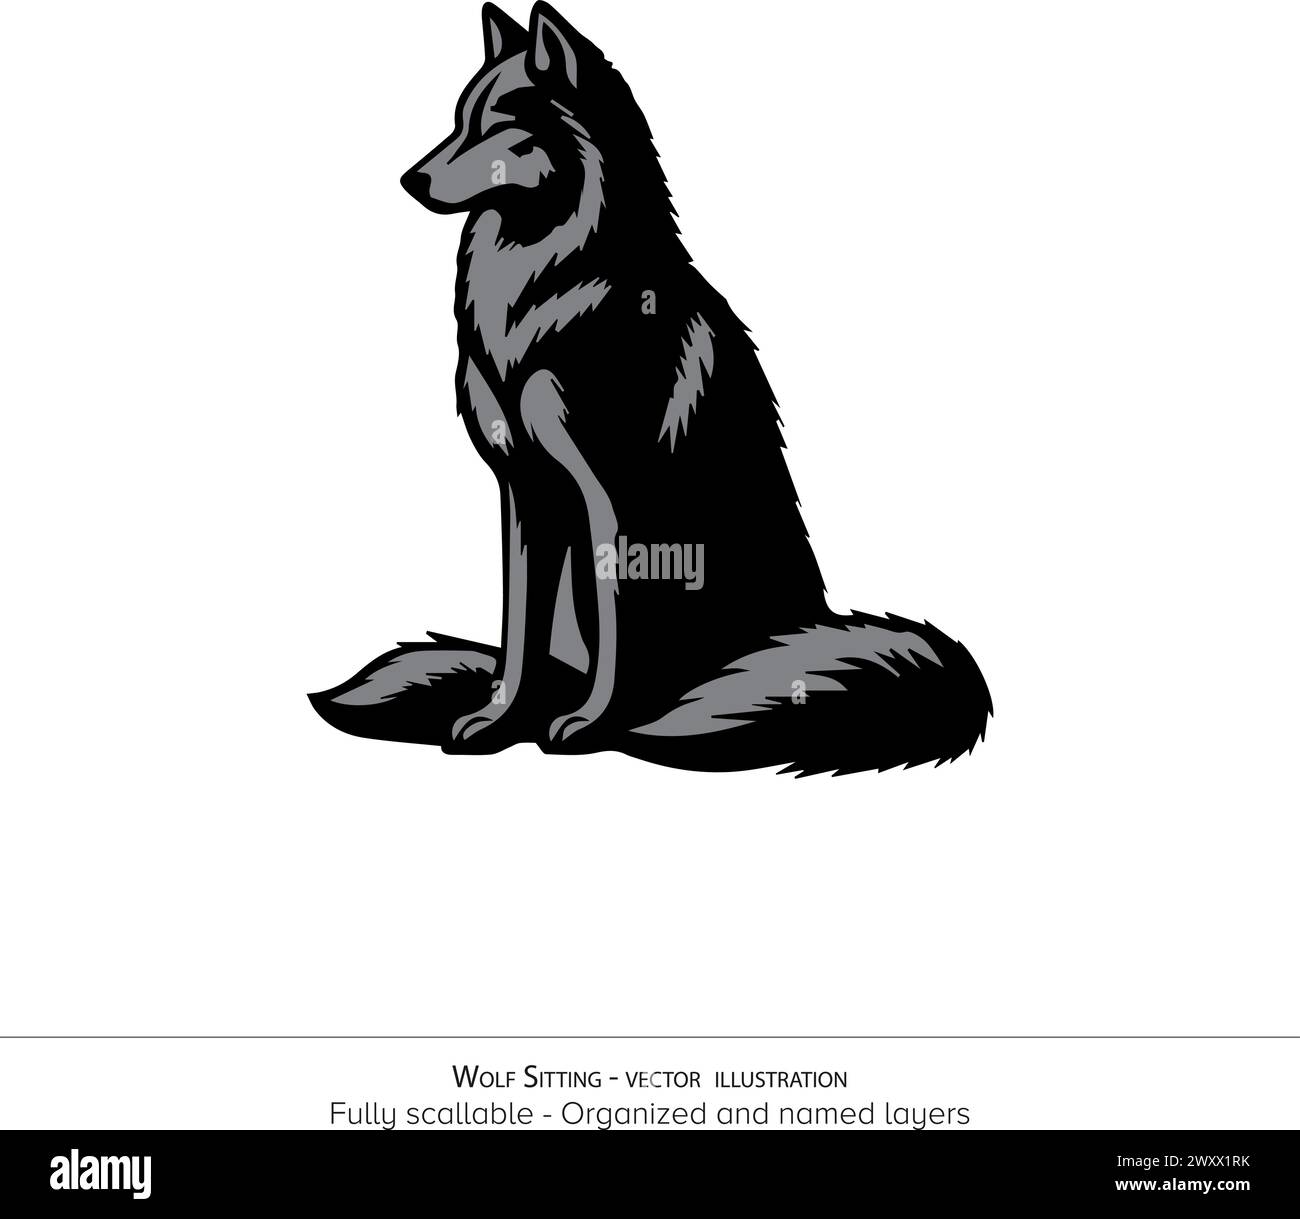 Illustration vectorielle de loup assis - Noir et blanc, isolé sur fond transparent Illustration de Vecteur